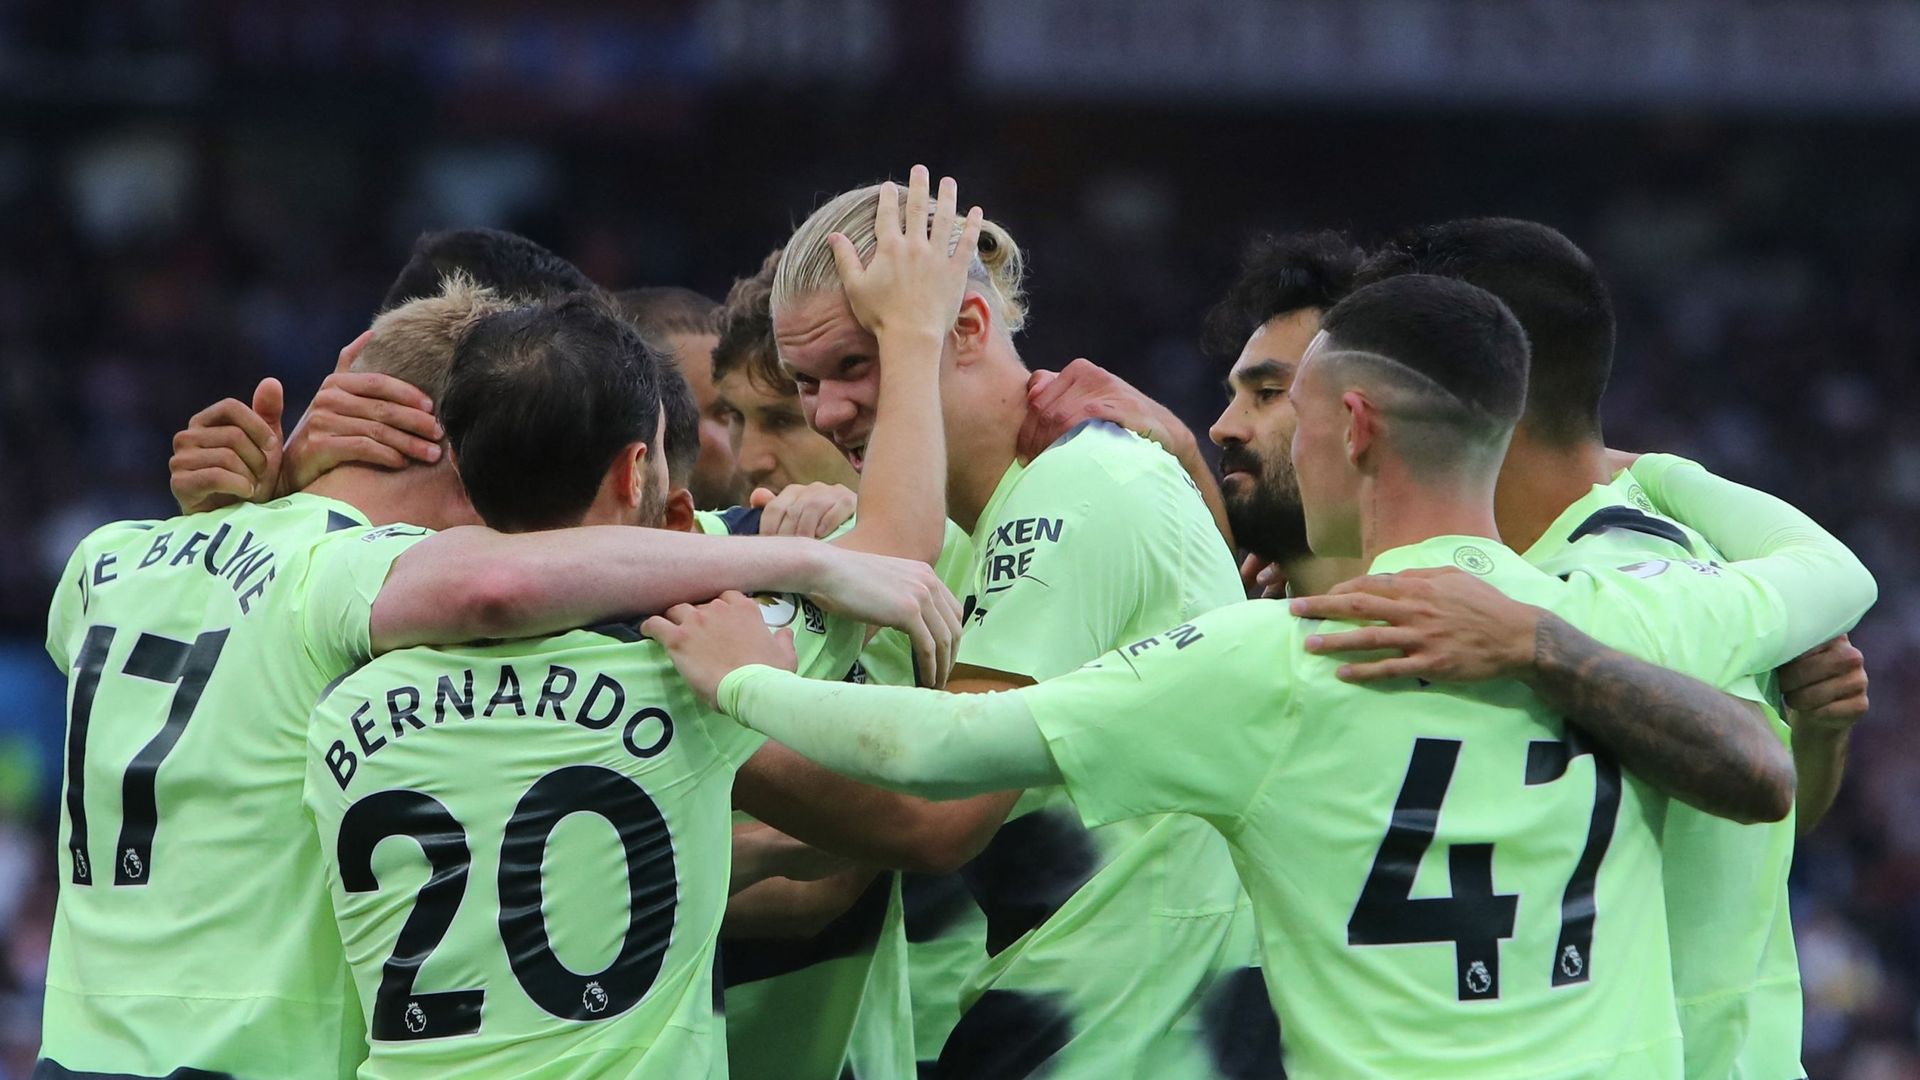 Football : Les joueurs de Manchester City félicitent Erling Haaland après l’un de ses buts. D’après un rapport du CIES, le club anglais possède l’effectif le plus cher de la planète foot.